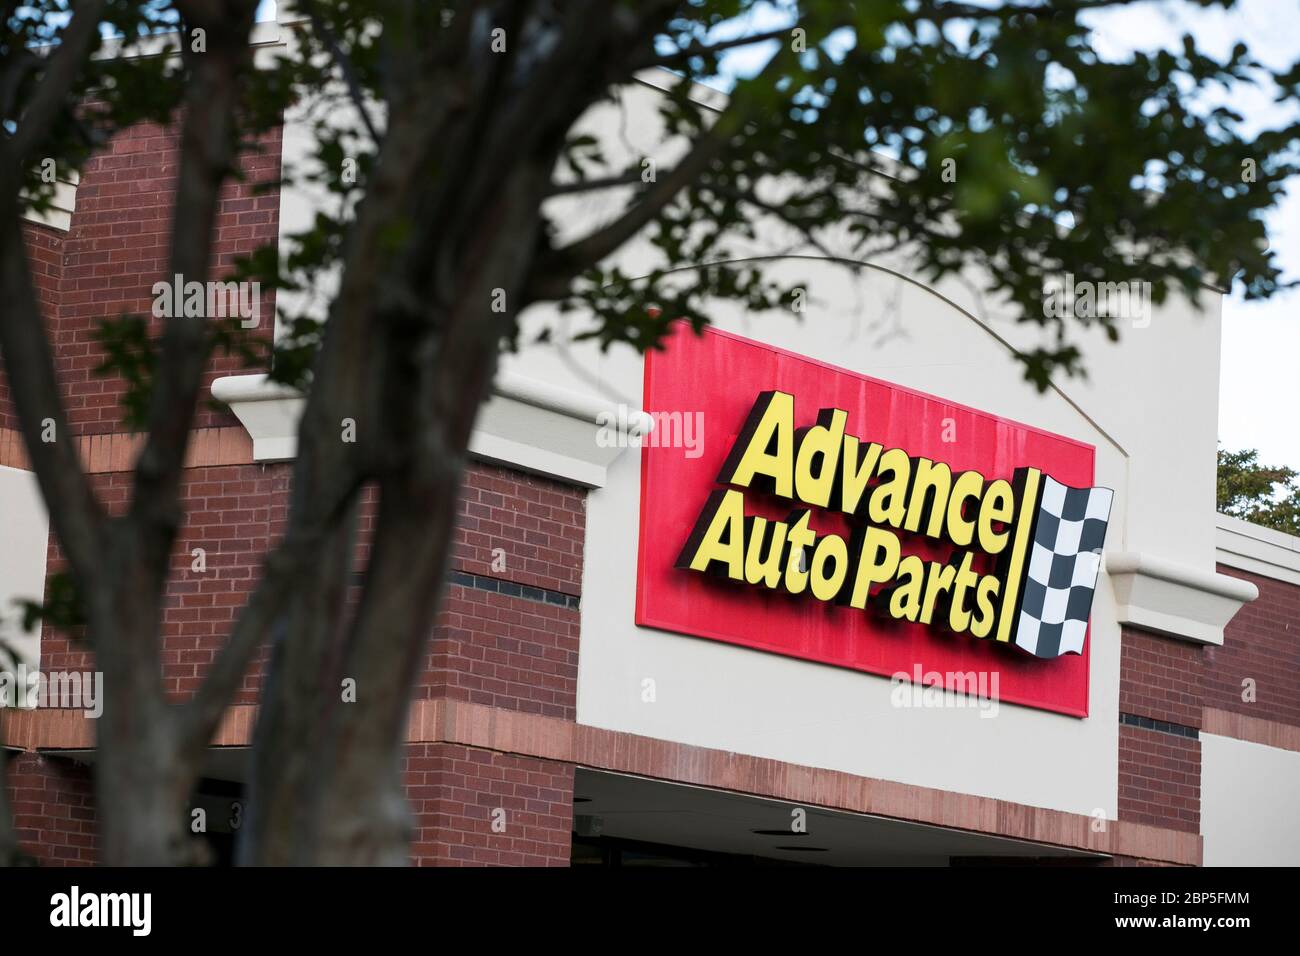 Un logo à l'extérieur d'un magasin de détail Advance Auto Parts à Richmond, en Virginie, le 13 mai 2020. Banque D'Images